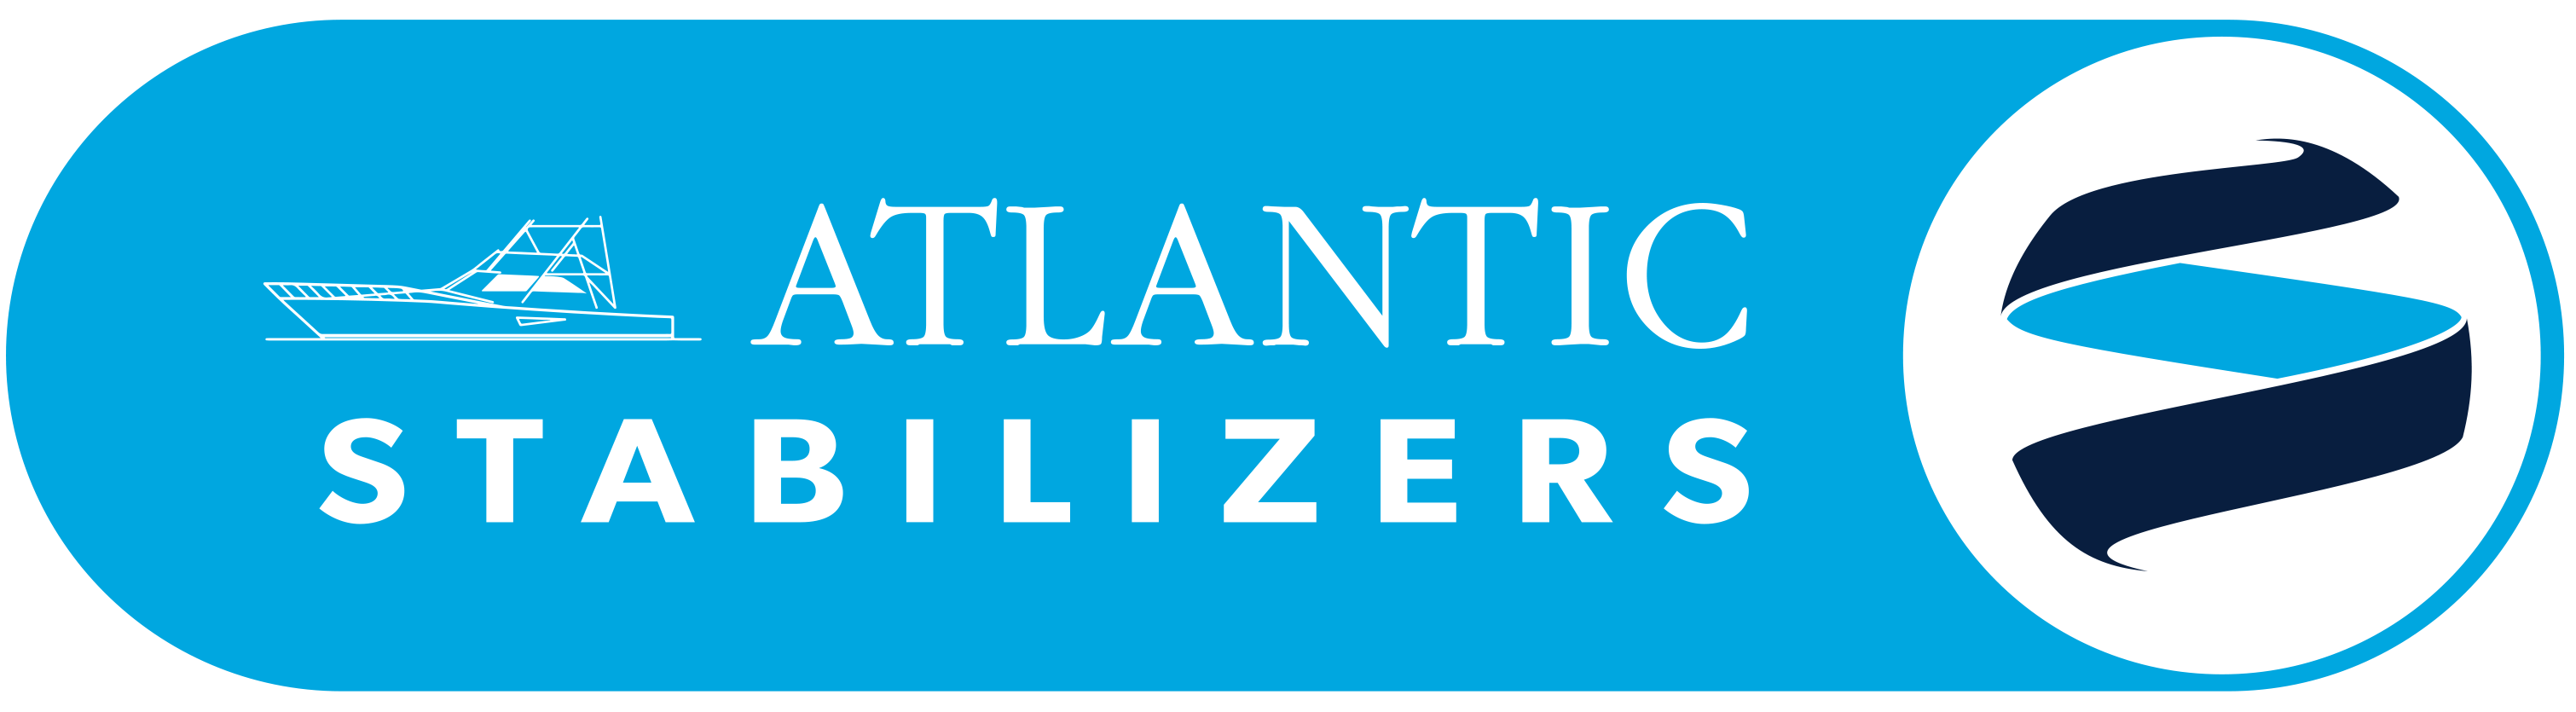 Atlantic Stabilizers